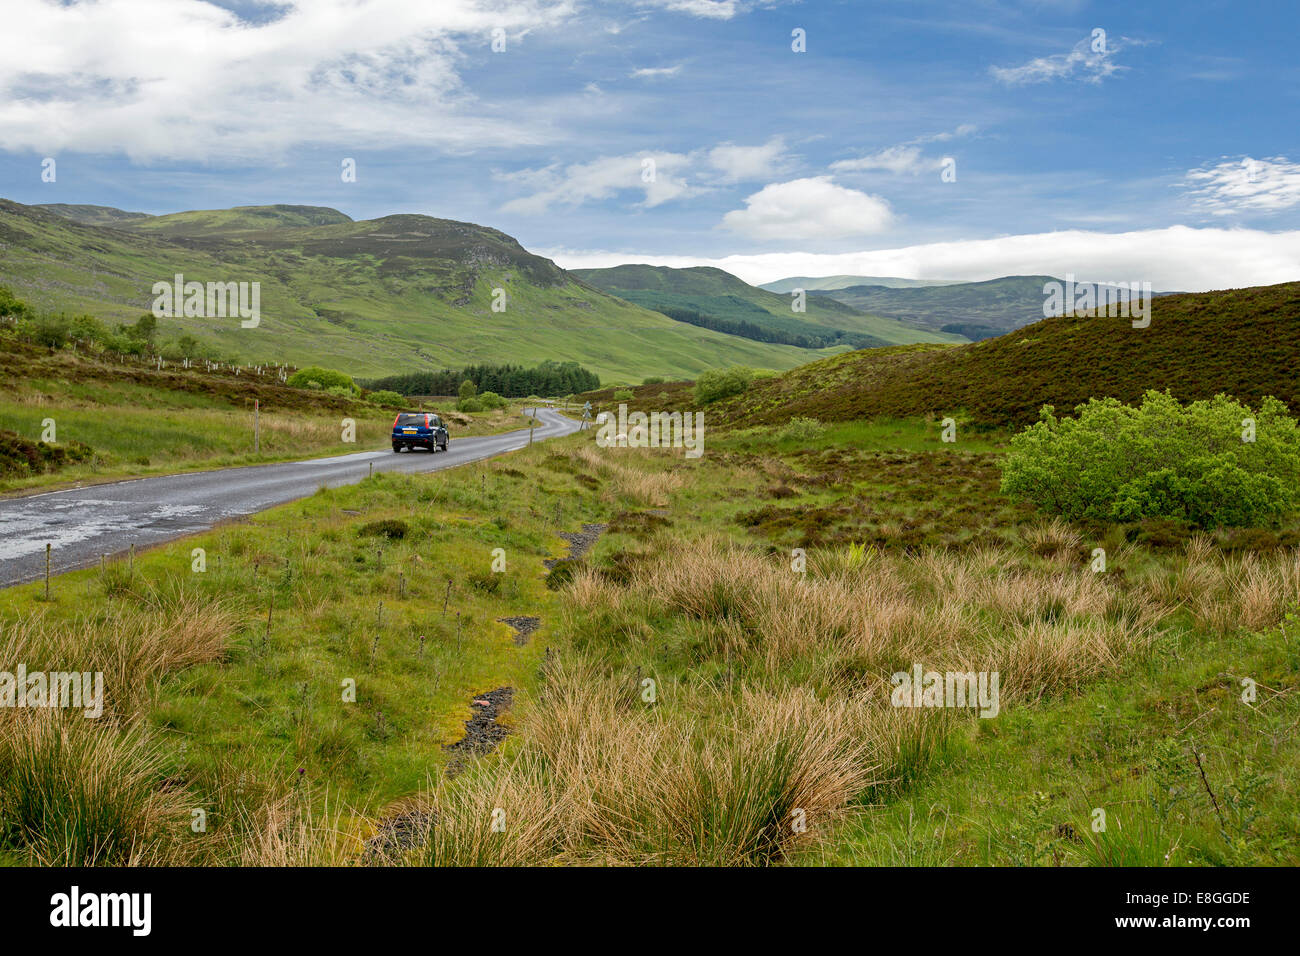 Malerische Landschaft mit Auto auf schmale Straße schlängelt sich durch die grünen Hügeln, Heide und Moorlandschaften der schottischen highlands Stockfoto